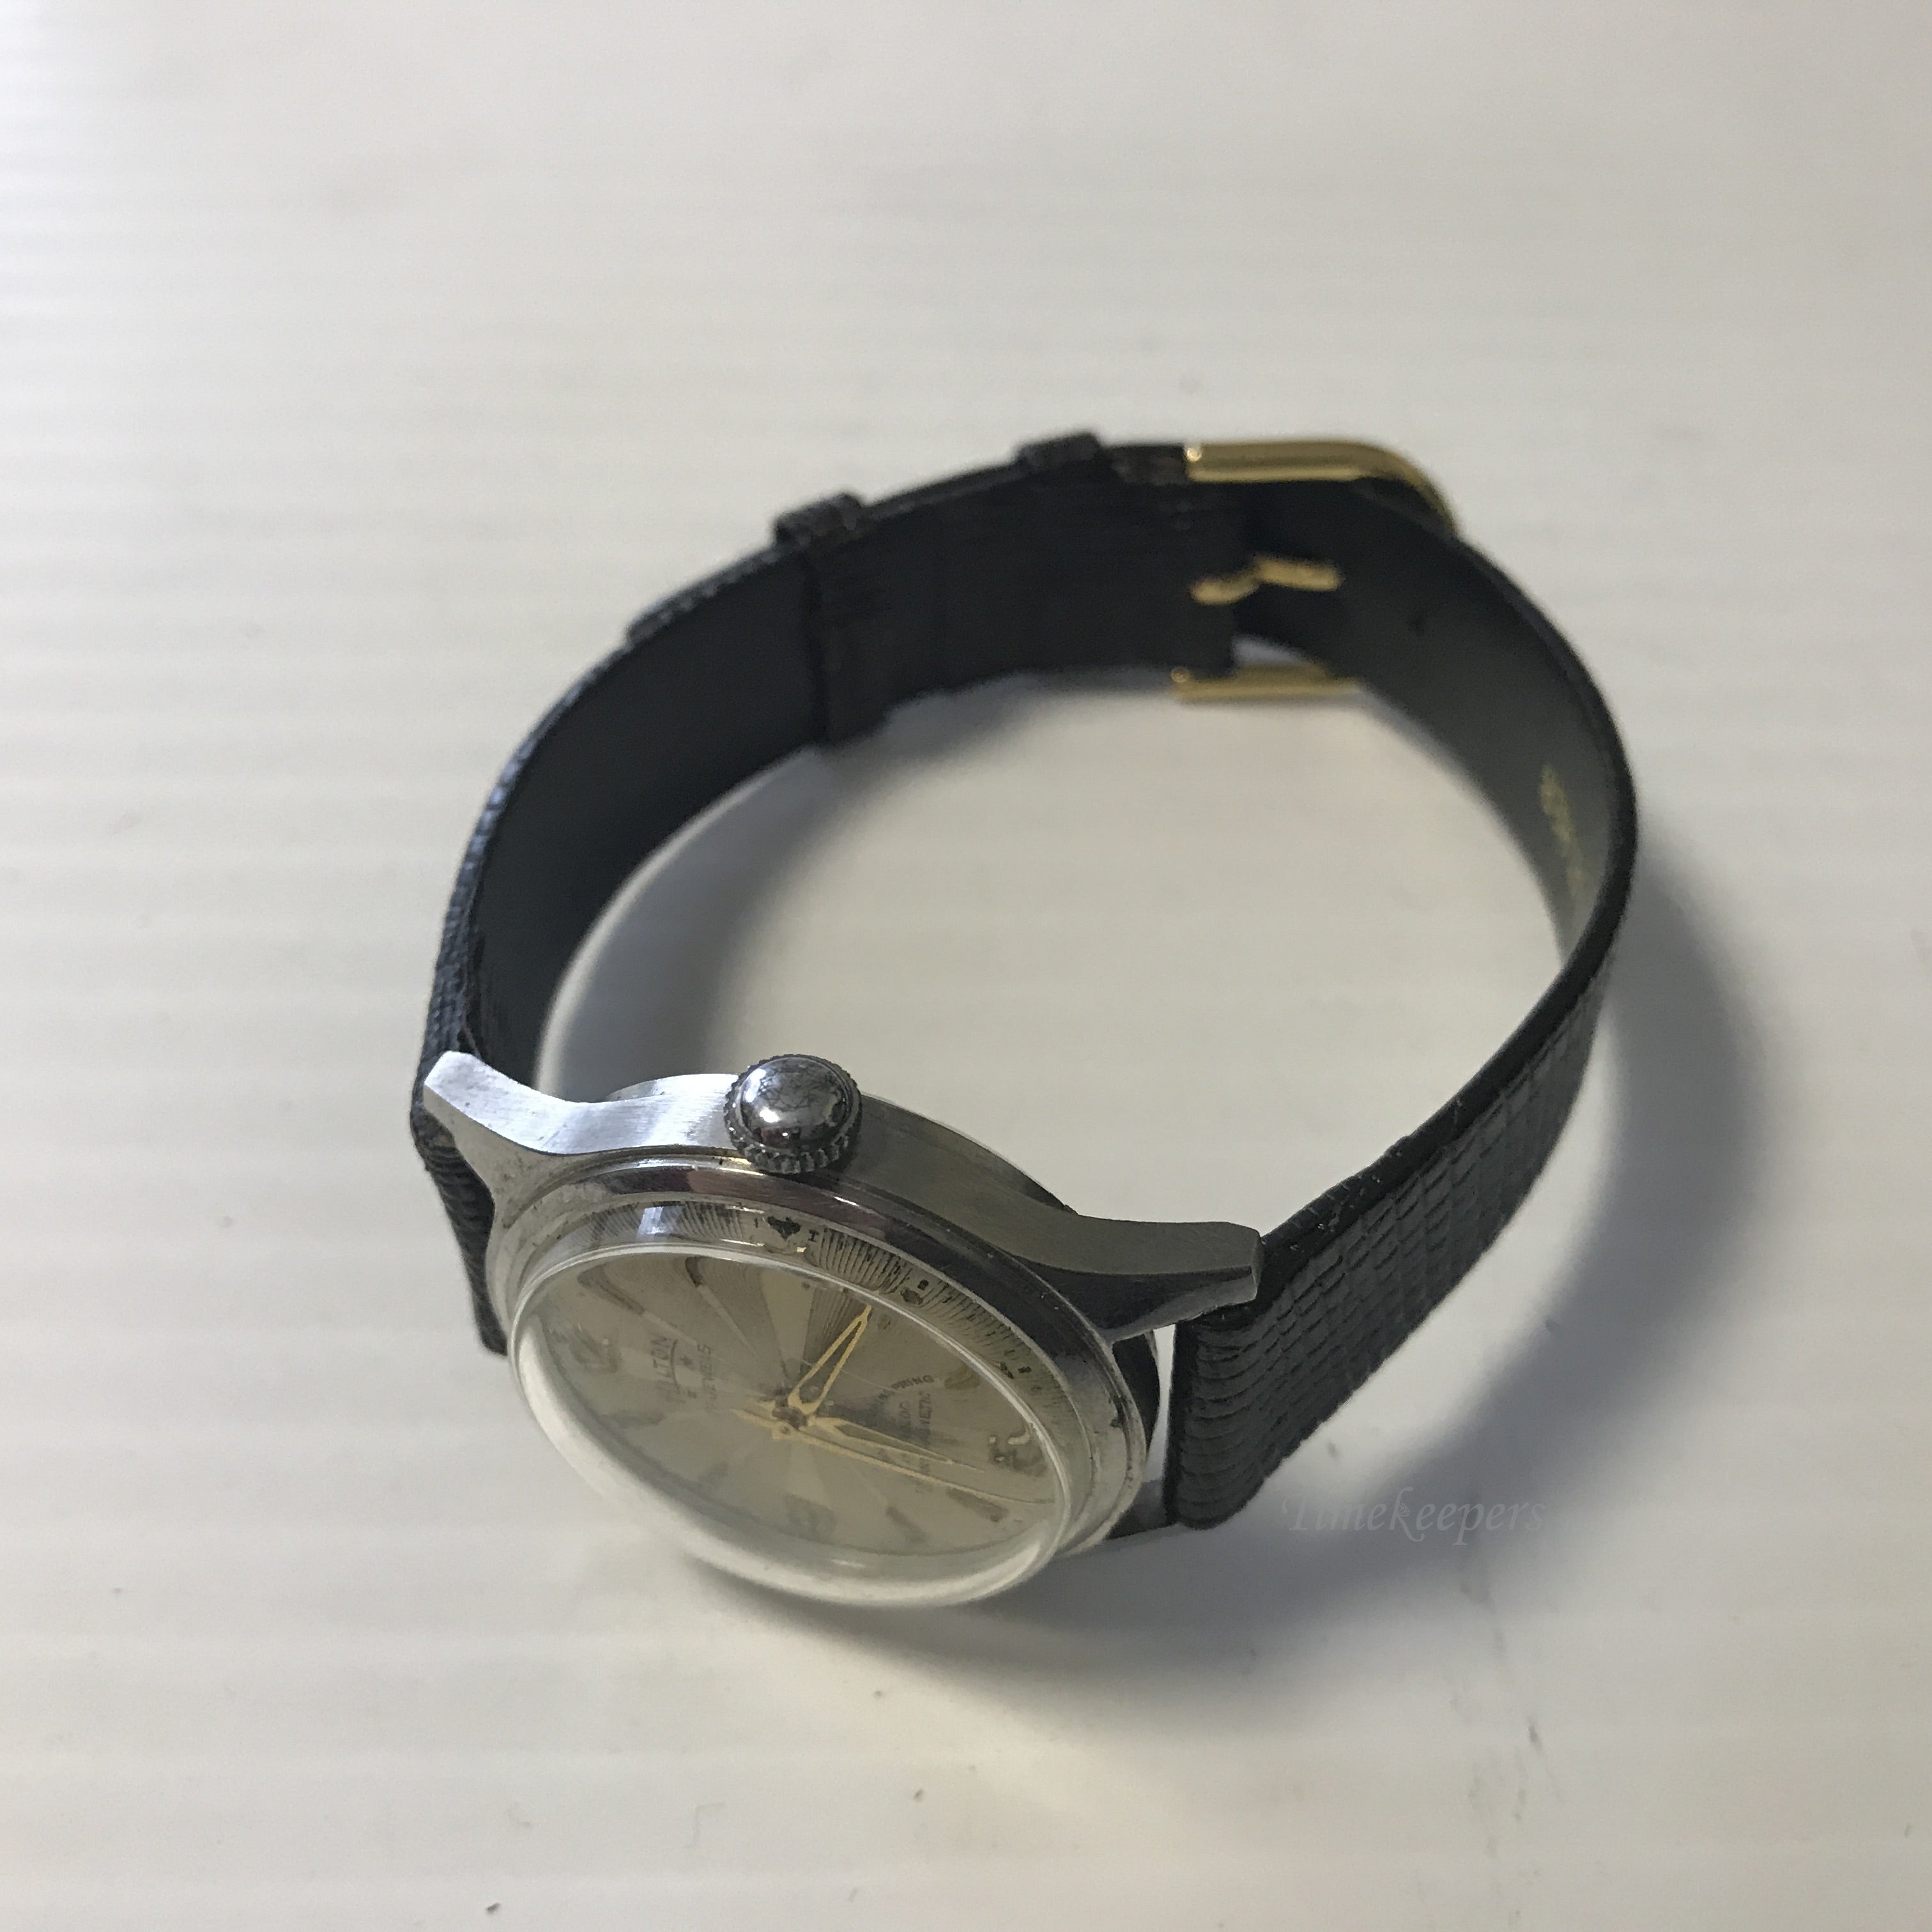 Sold at Auction: Vintage Hilton 17 Jewel Incabloc Antimagnetic Wrist Watch